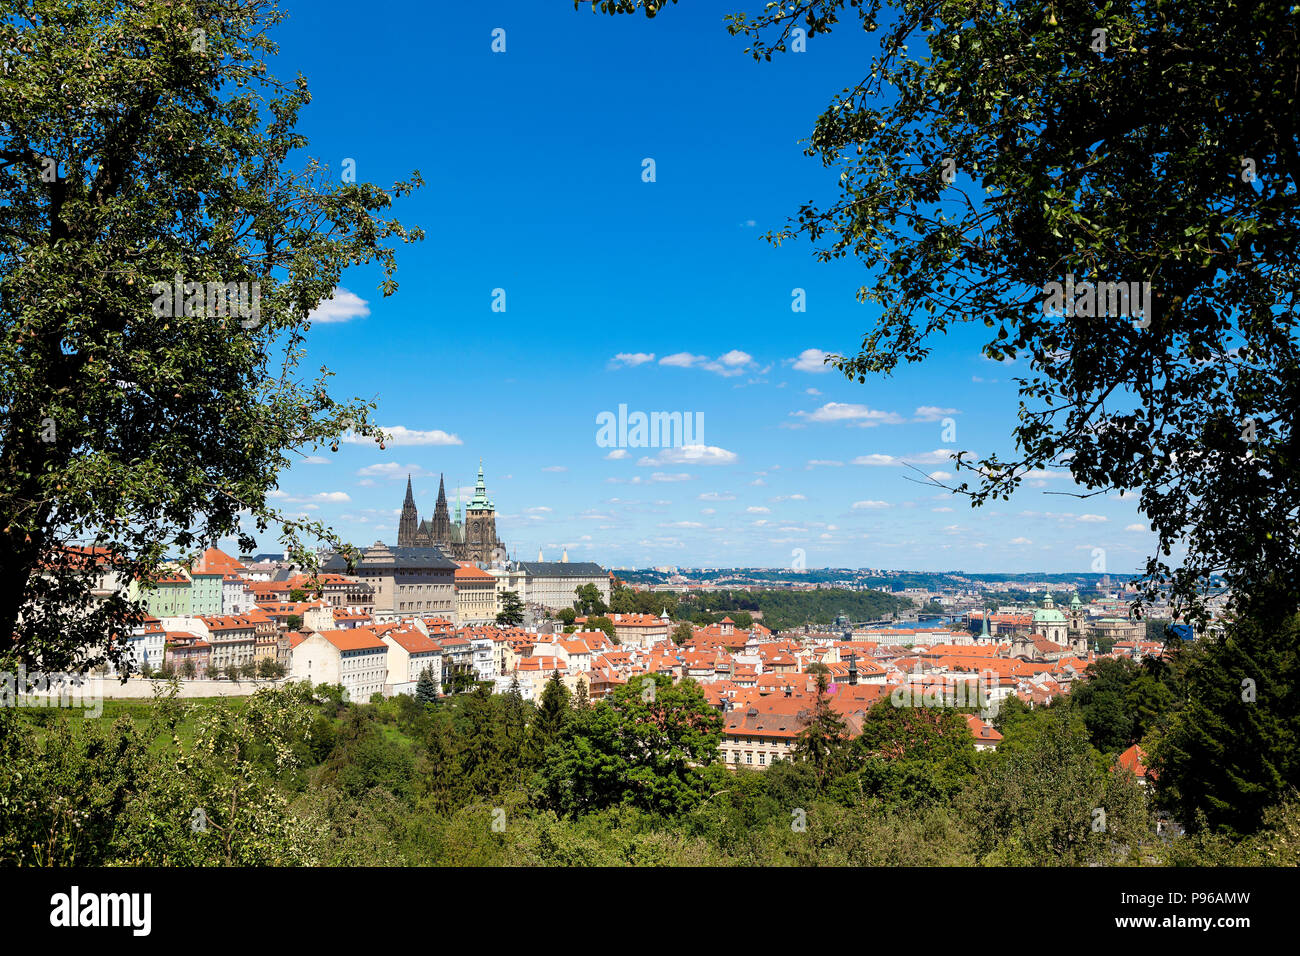 Panorama von Prag in der Nähe des Kloster Strahov, mit dem Schloss und Kathedrale, helle Sonne, blauer Himmel. Stockfoto